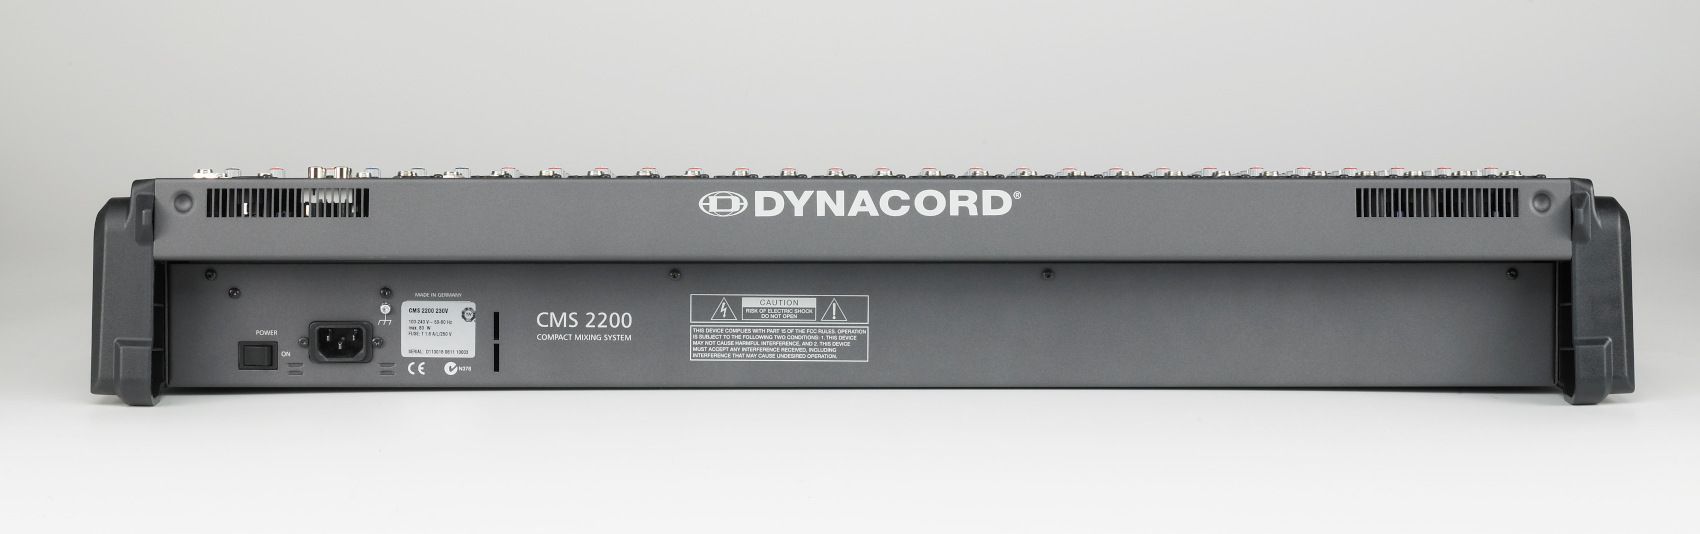 Dynacord CMS 2200-3 - фото 3